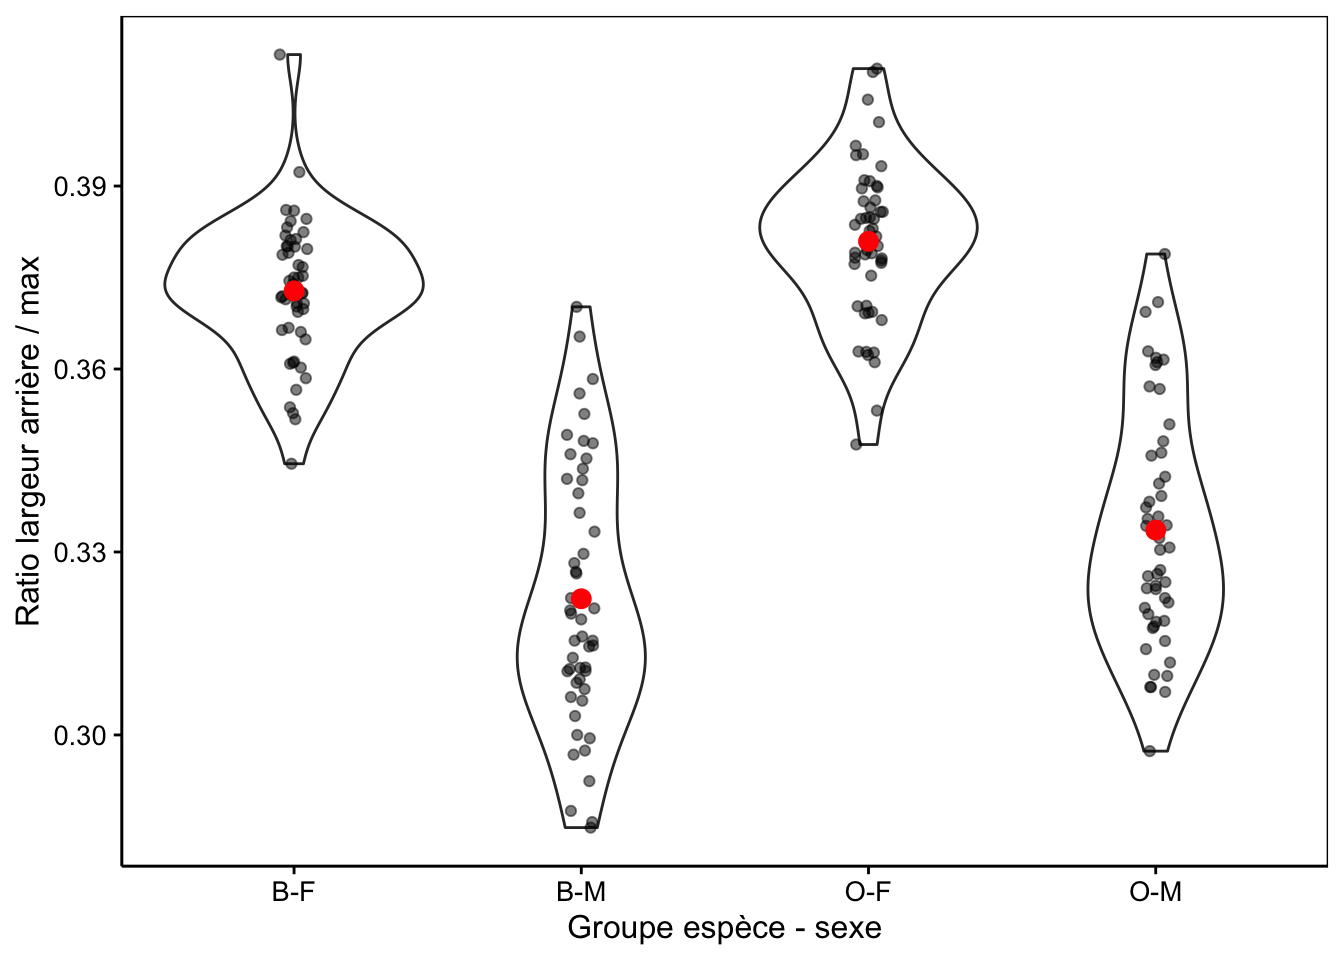 Ratio largeur arrière/largeur max en fonction du groupe de crabes *L. variegatus*. Graphique adéquat pour comparer les moyennes et distributions dans le cas d'un nombre important de réplicats (moyennes en rouge + observations individuelles en noir semi-transparent superposées à des graphiques en violon).